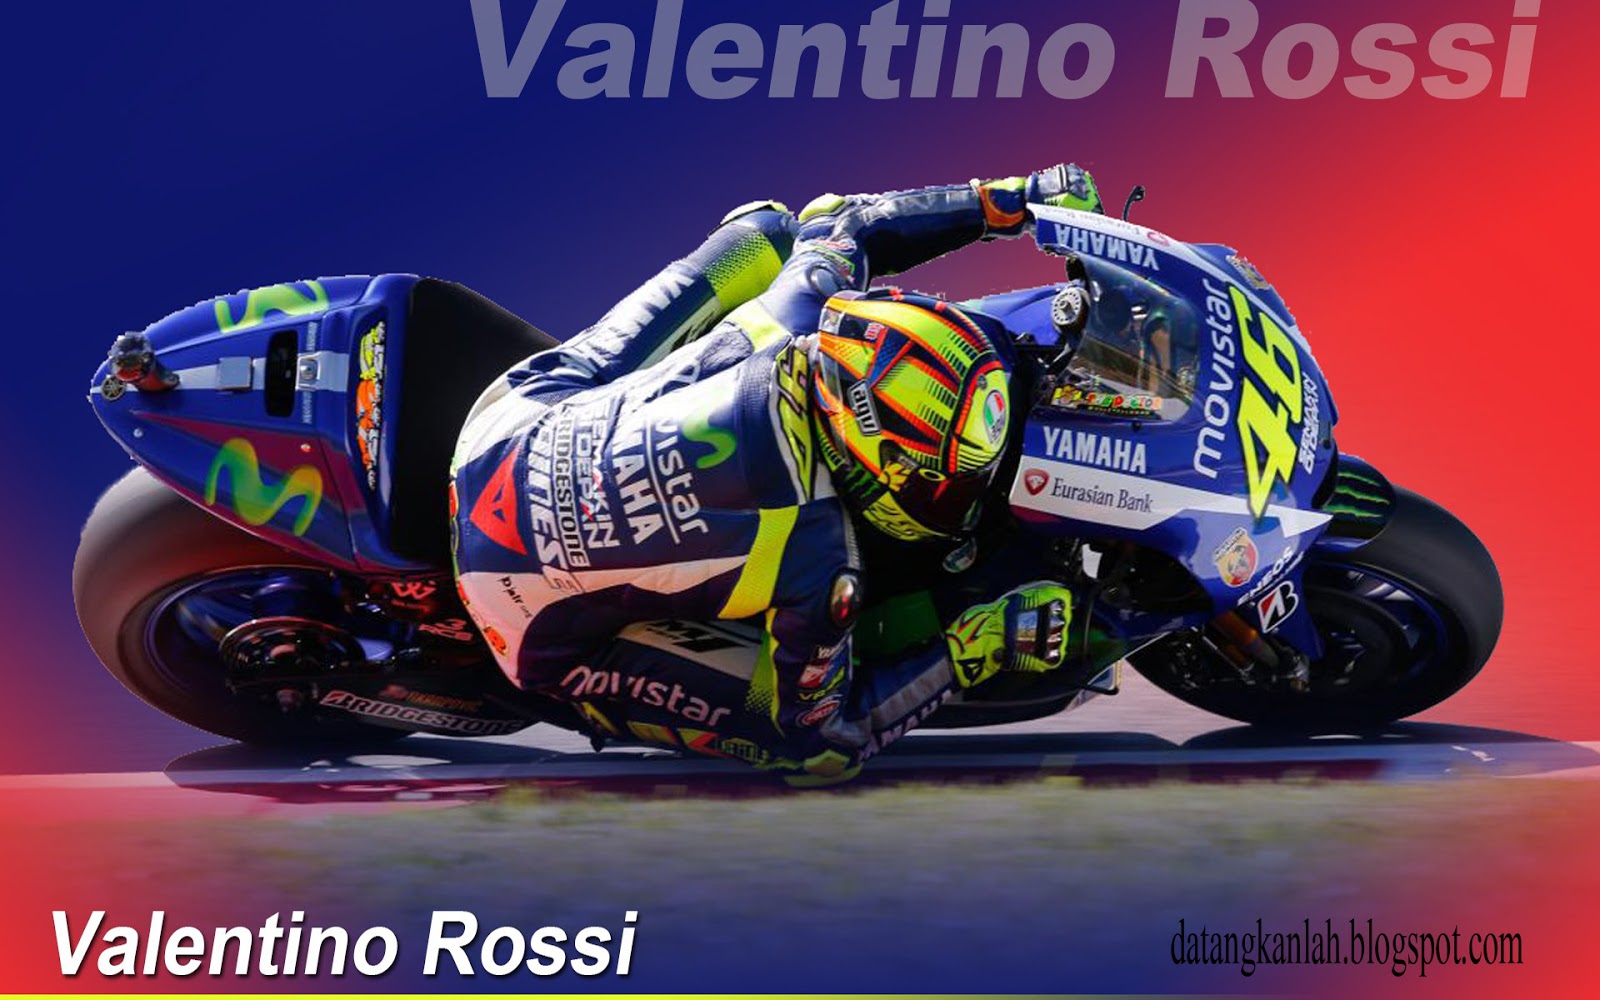 Wallpaper Valentino Rossi U2013 Adorable